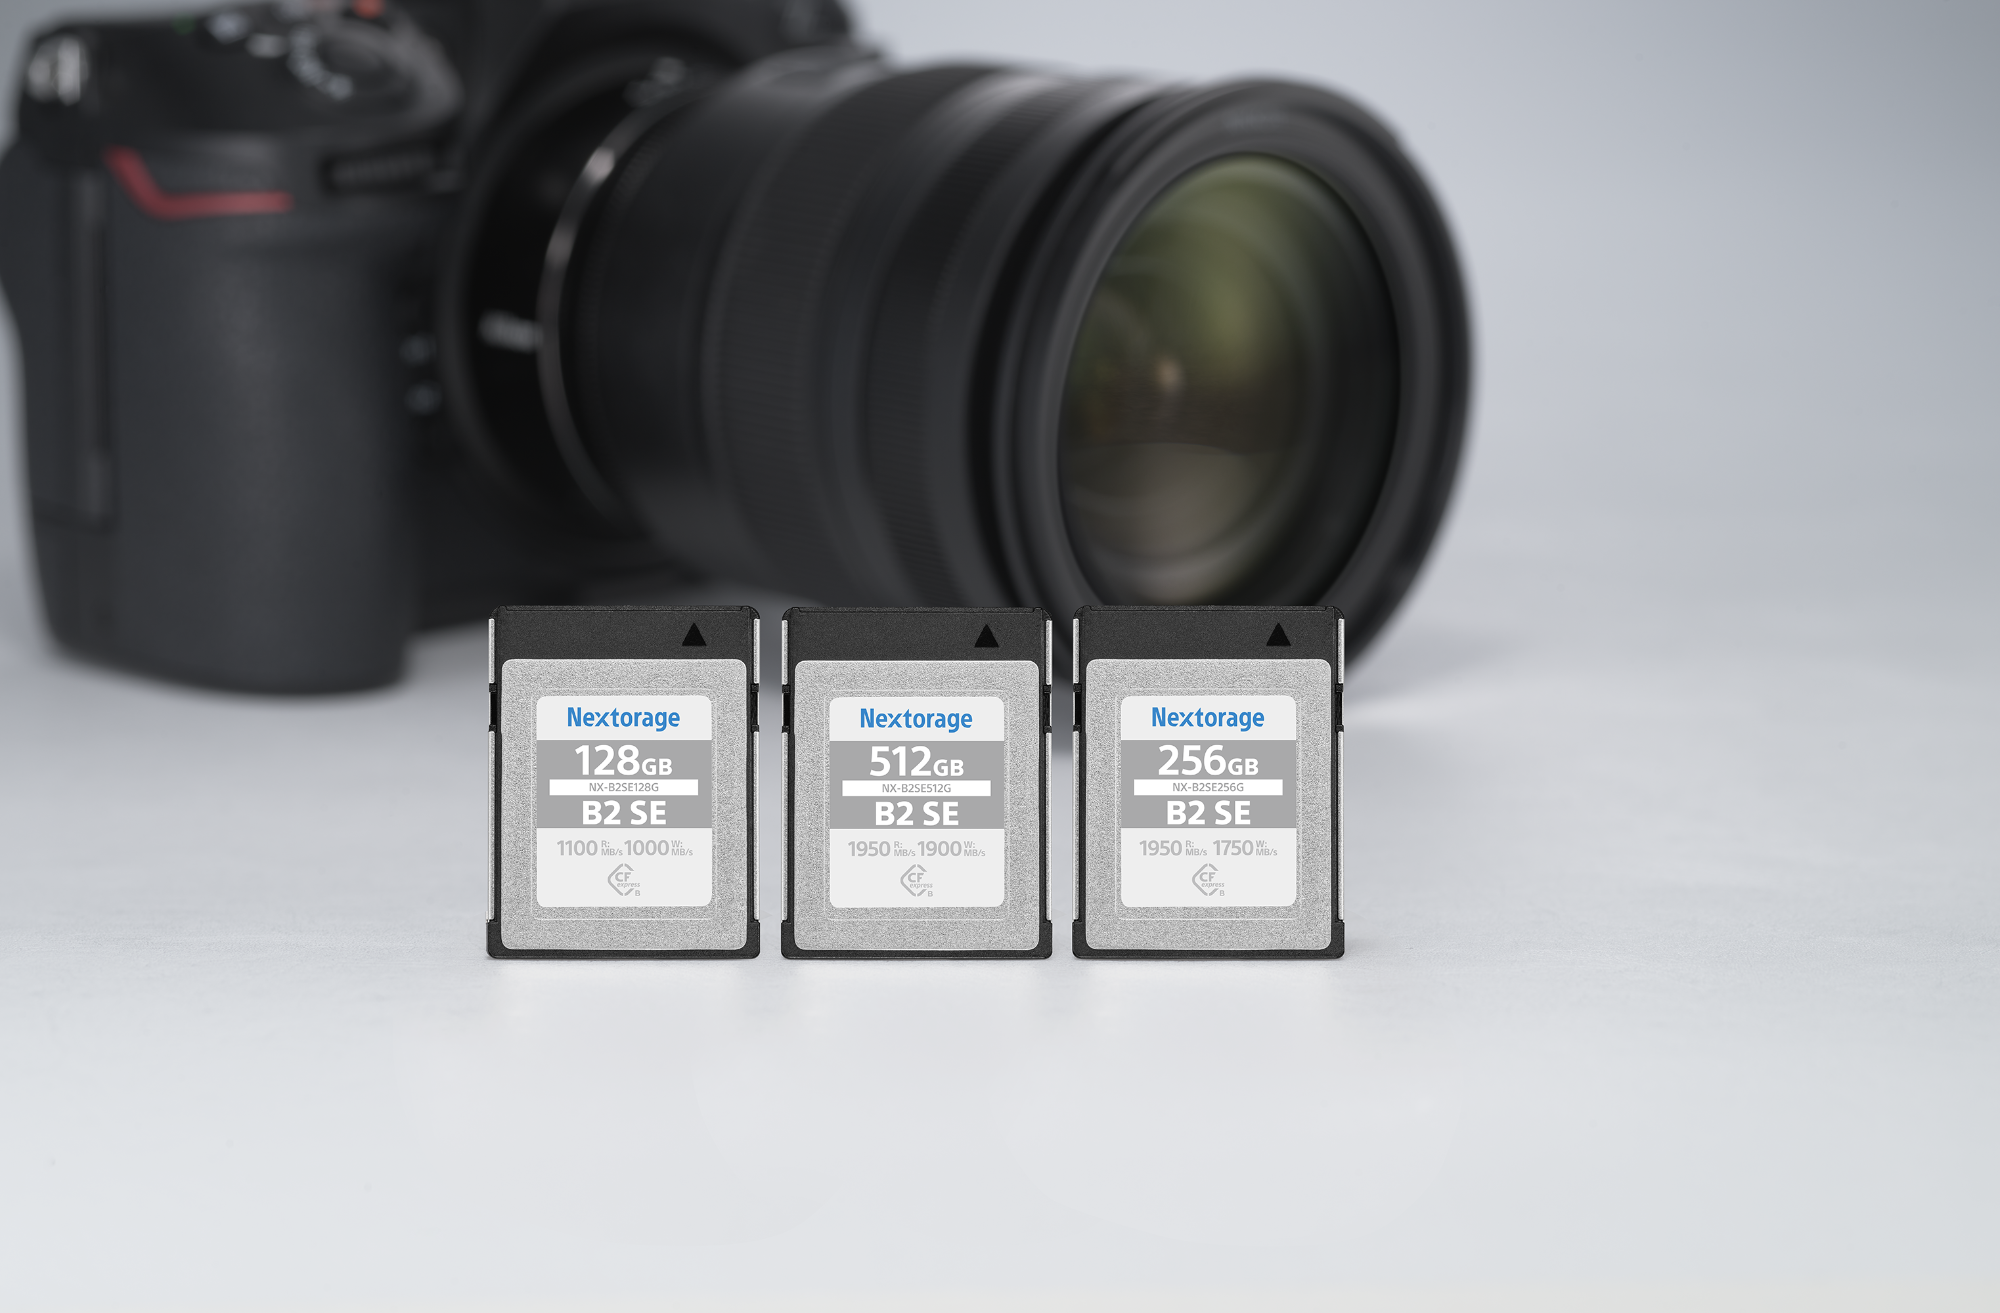 Nextorage CFexpress Type B Memory Card 128GB B2 SE Series